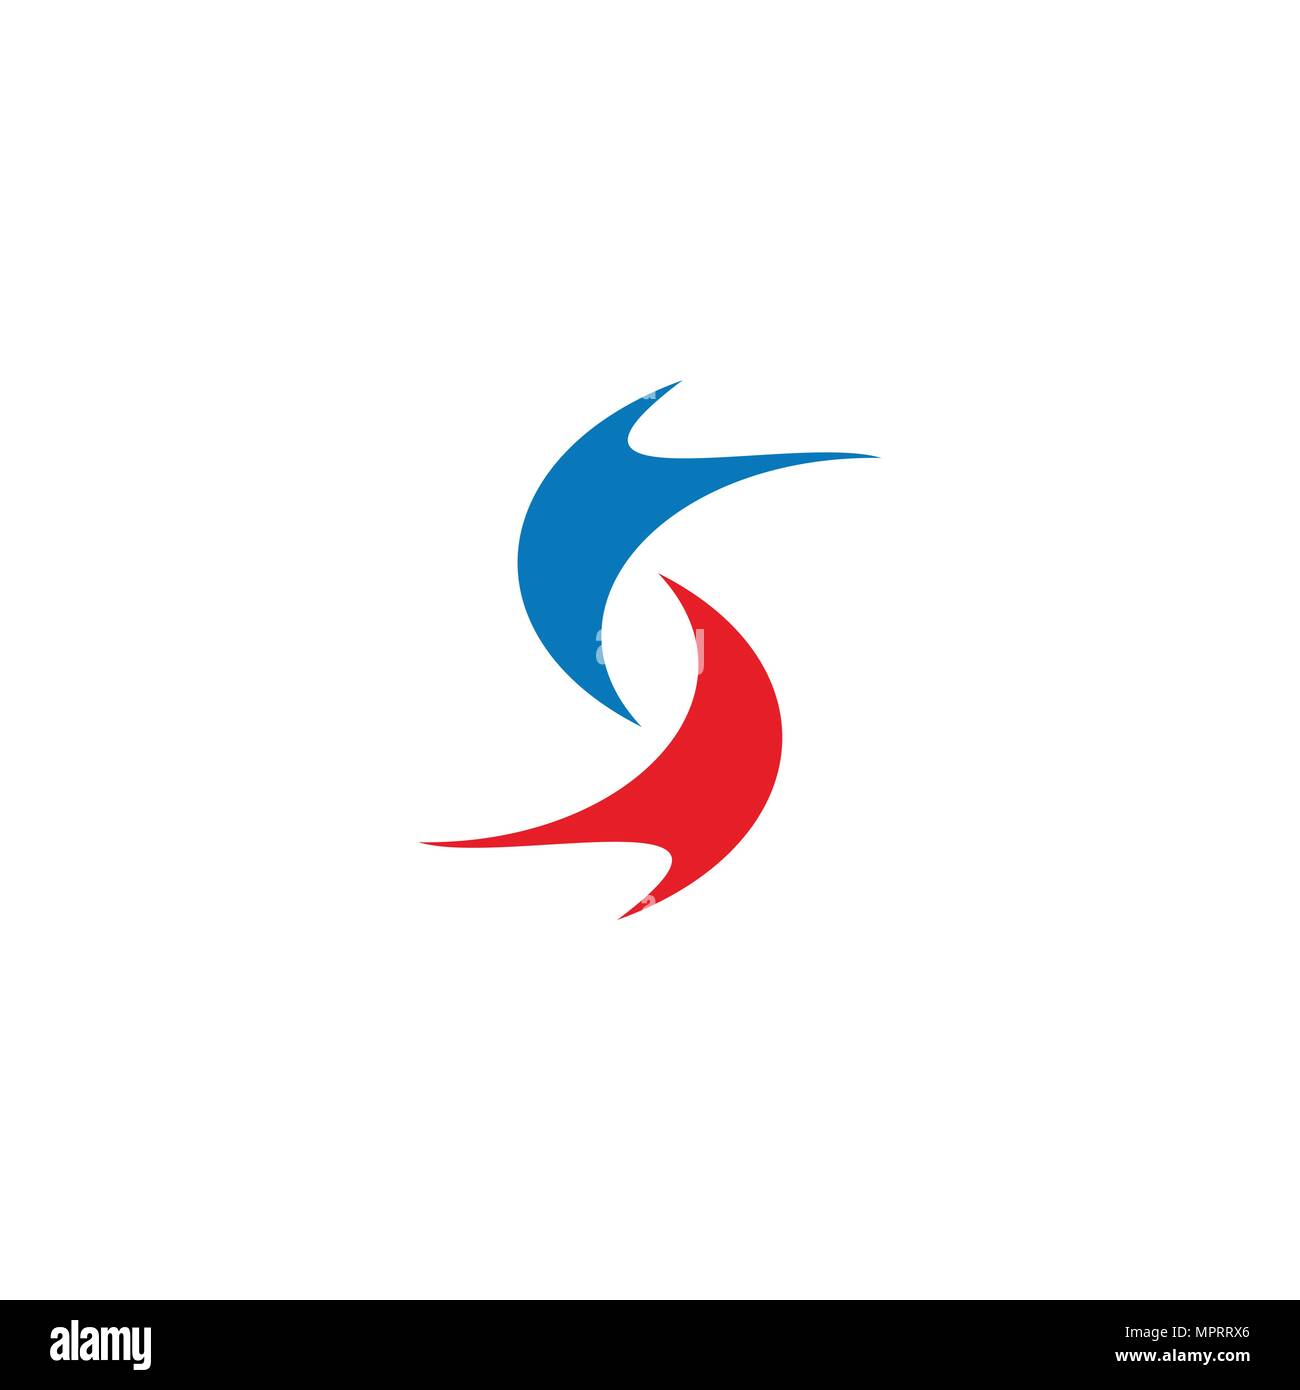 S letter logo vector, creative logo design. Stock Vector